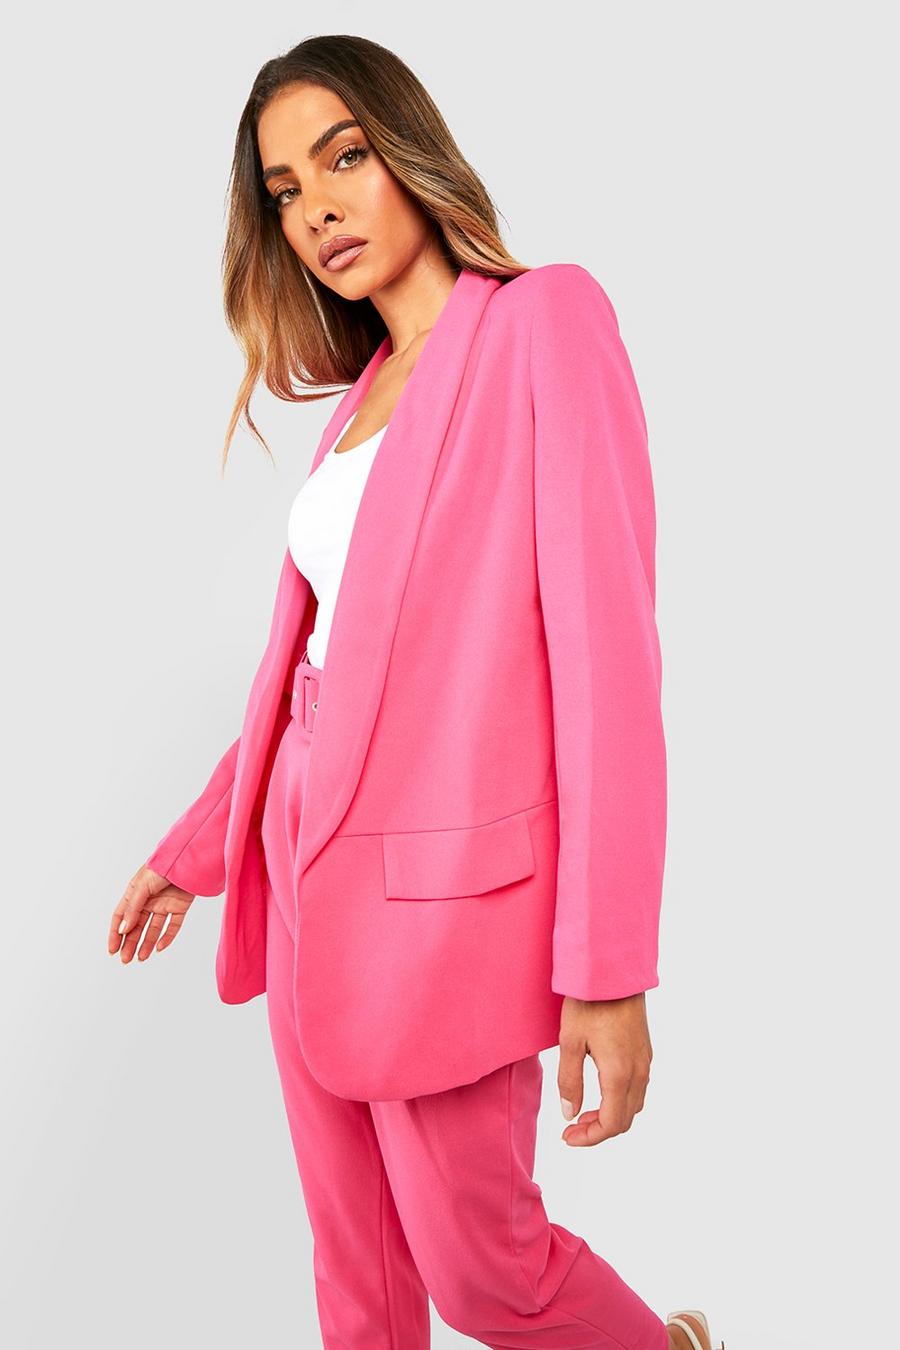 Hot pink Tailored Blazer